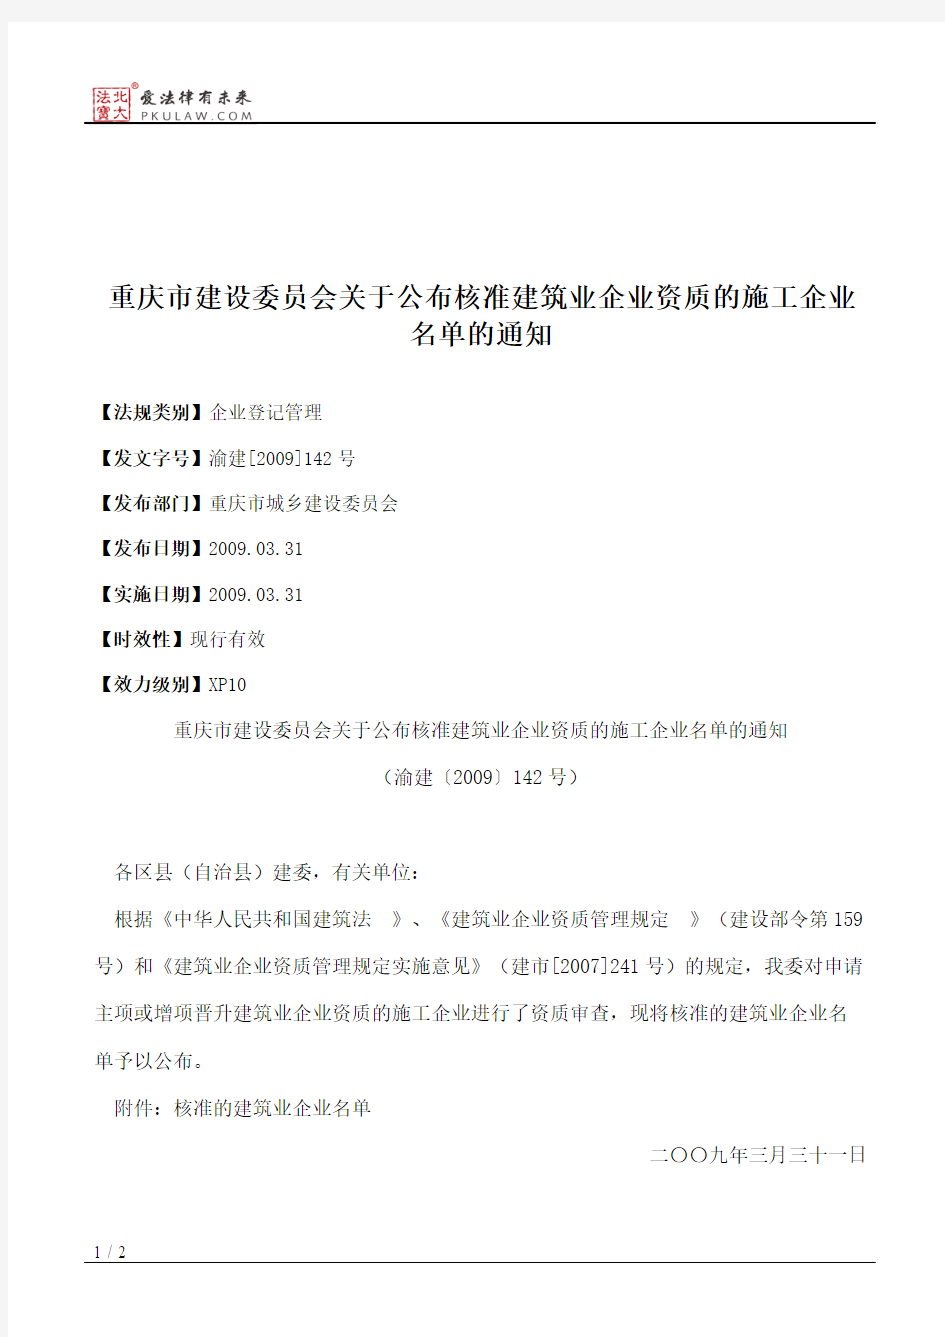 重庆市建设委员会关于公布核准建筑业企业资质的施工企业名单的通知